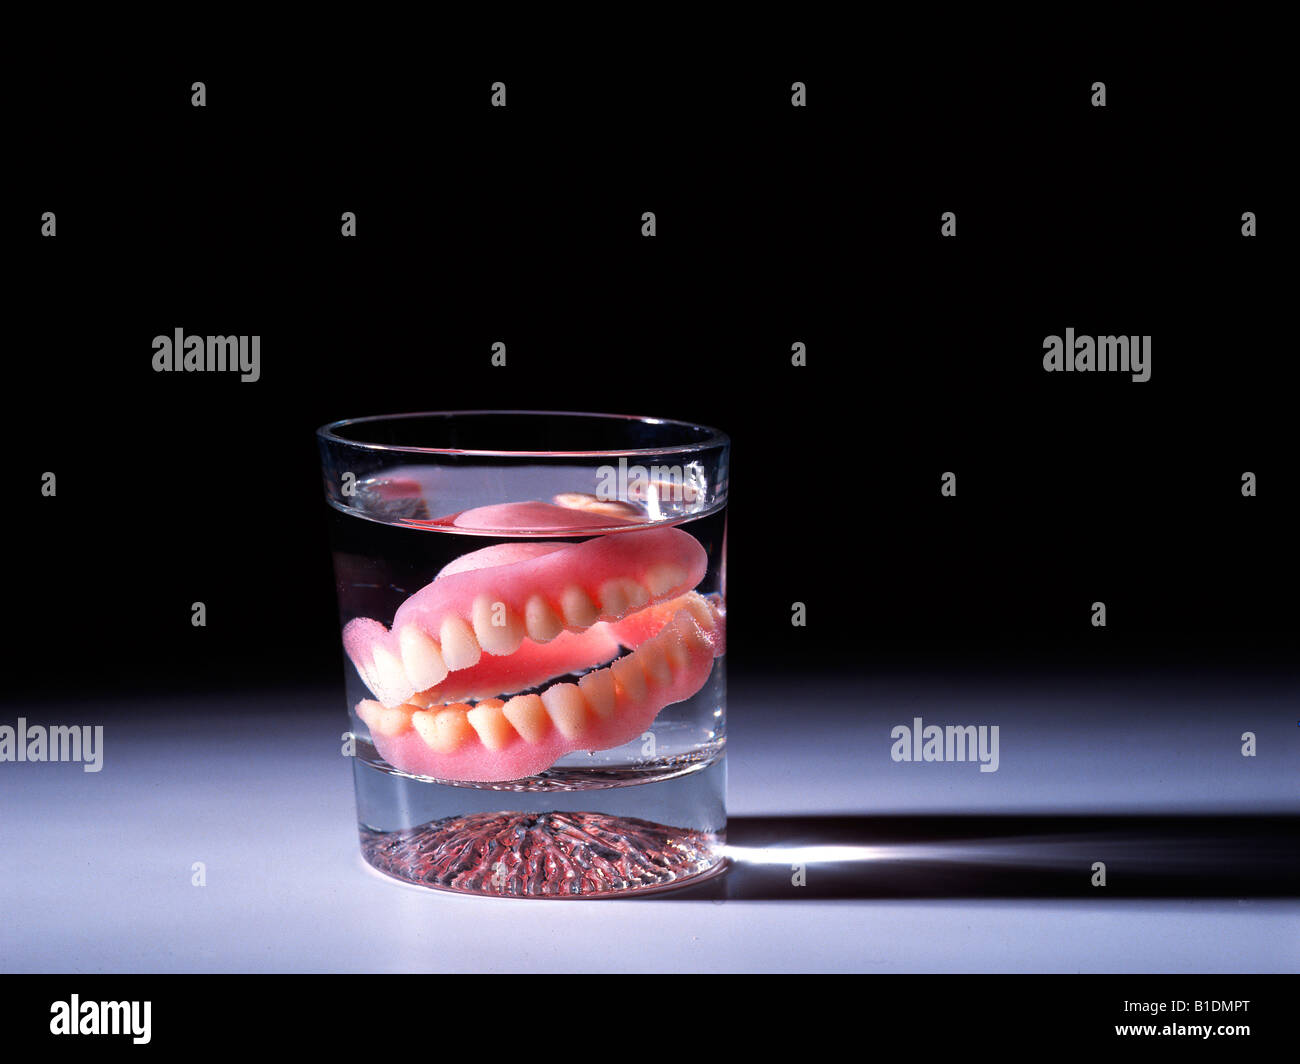 Dentier dans un verre Photo Stock - Alamy